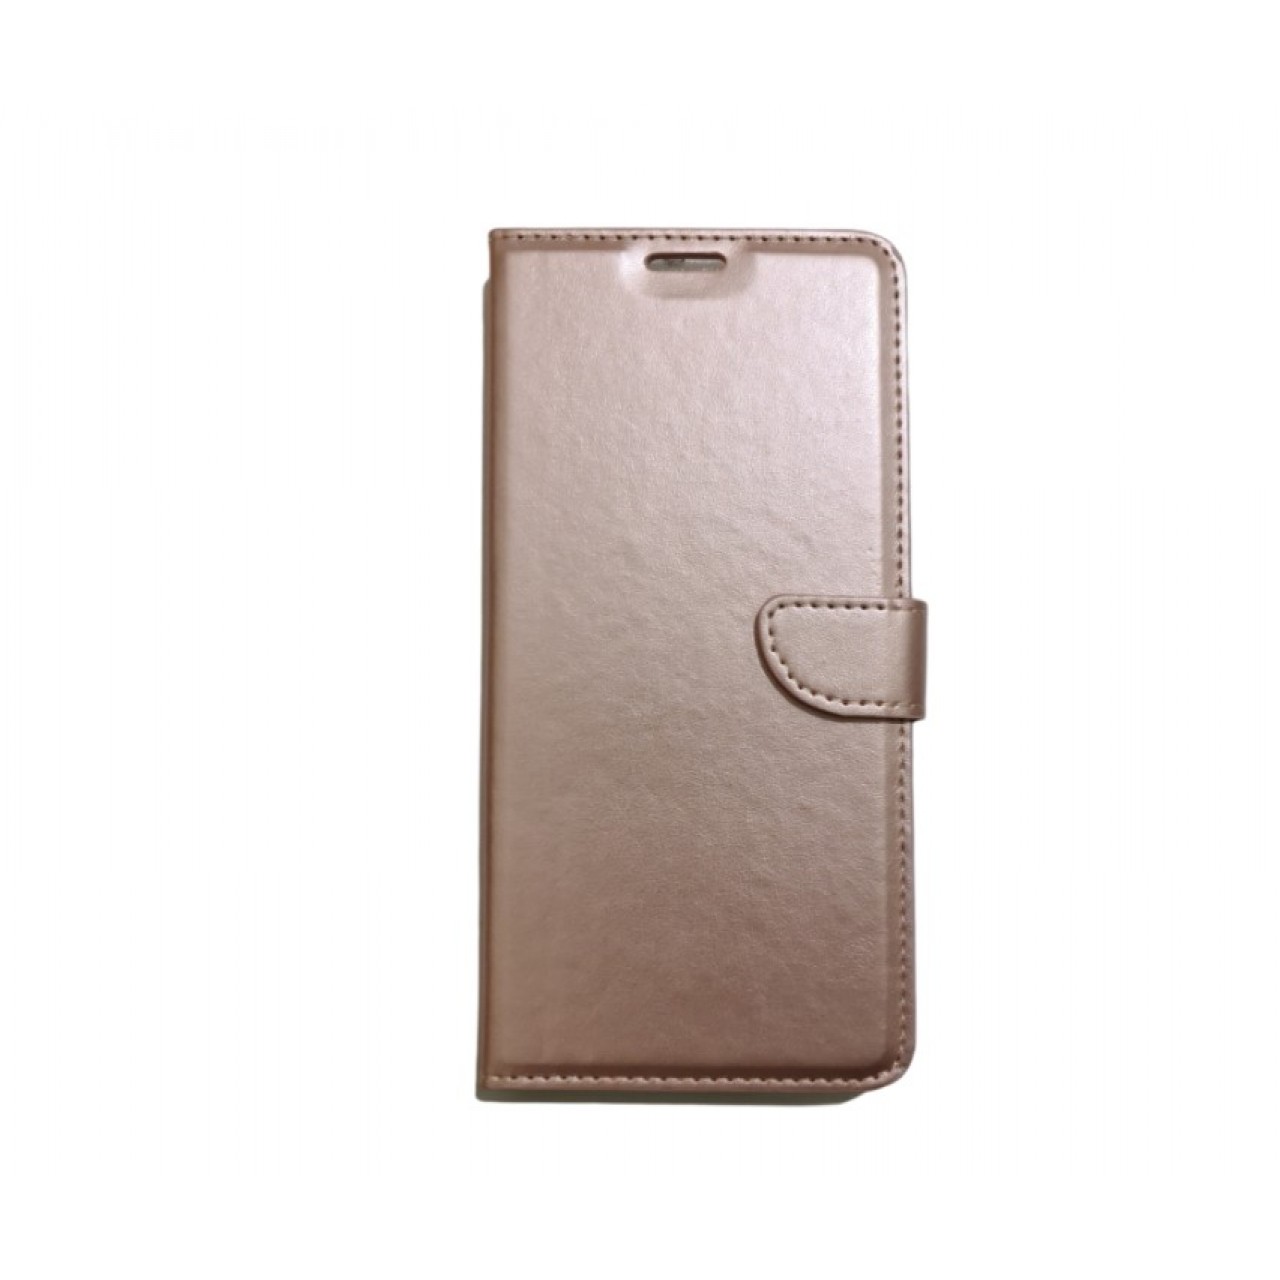 Θήκη Samsung Galaxy A71 PU Leather Πορτοφόλι - 5067 - Ροζ Χρυσό - OEM